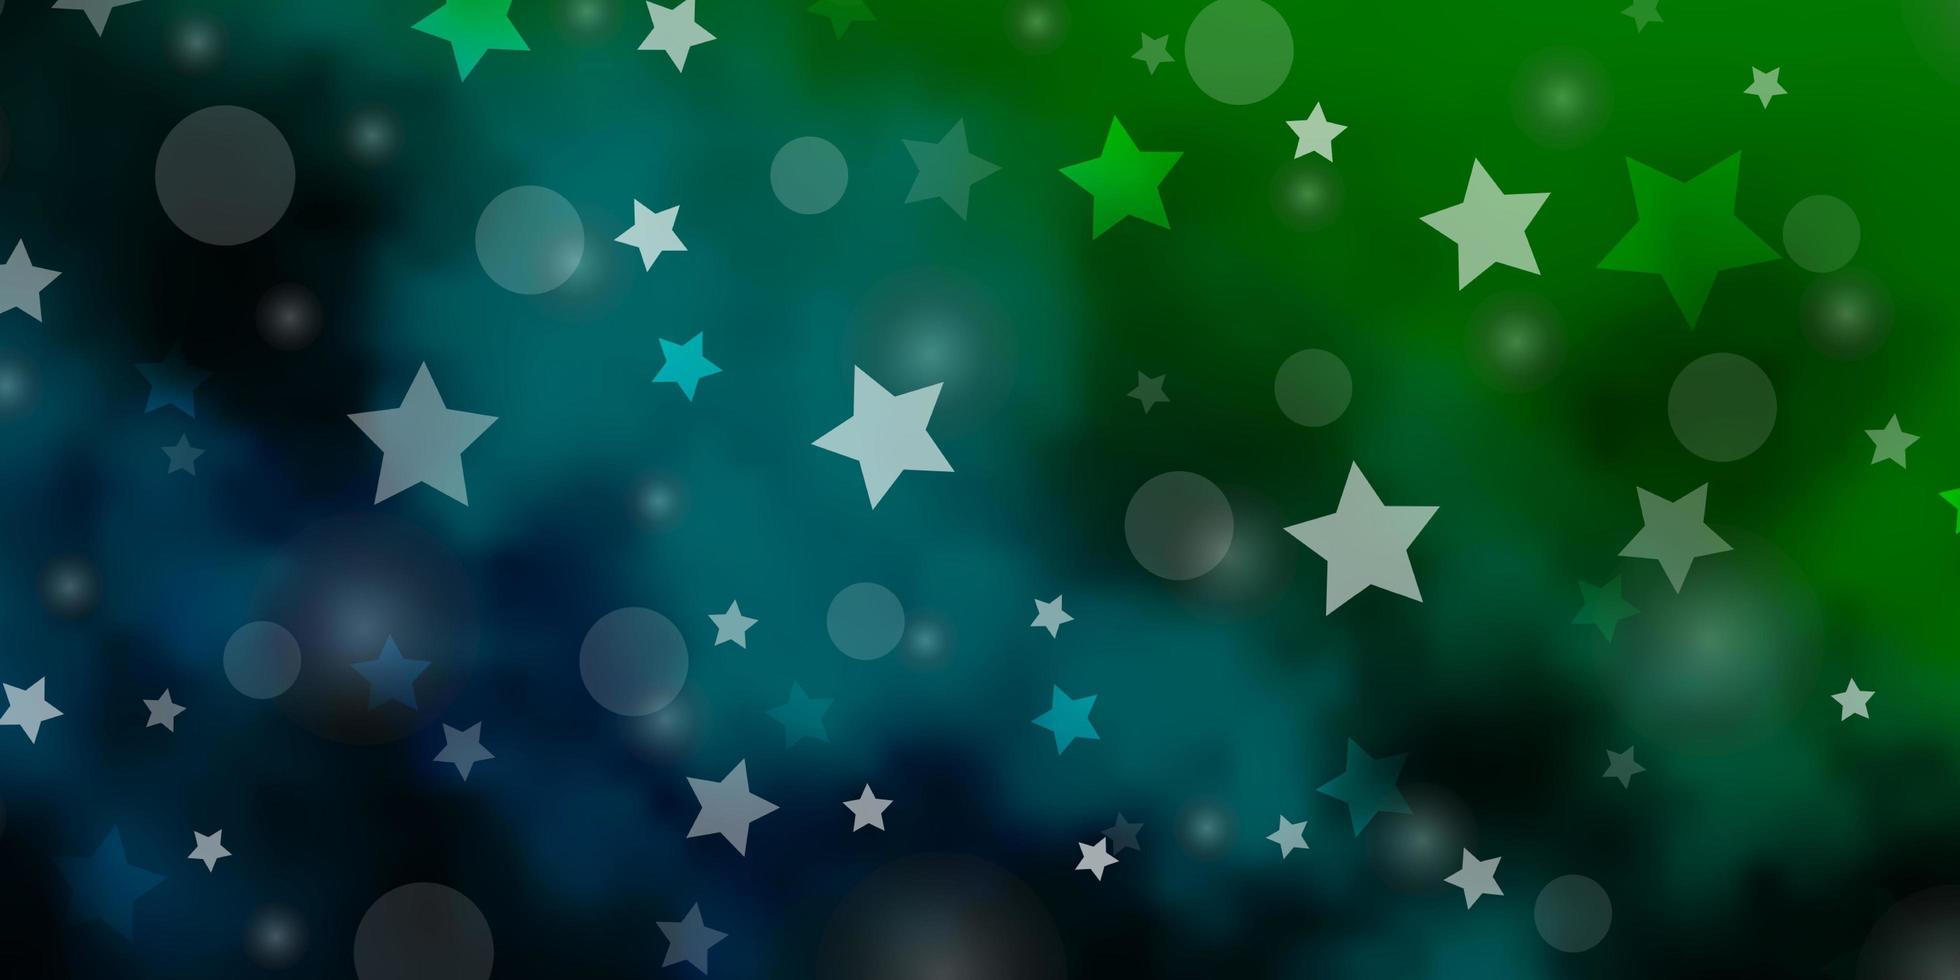 hellblaues, grünes Vektorlayout mit Kreisen, Sternen. abstrakte Illustration mit bunten Formen von Kreisen, Sternen. Textur für Jalousien, Vorhänge. vektor